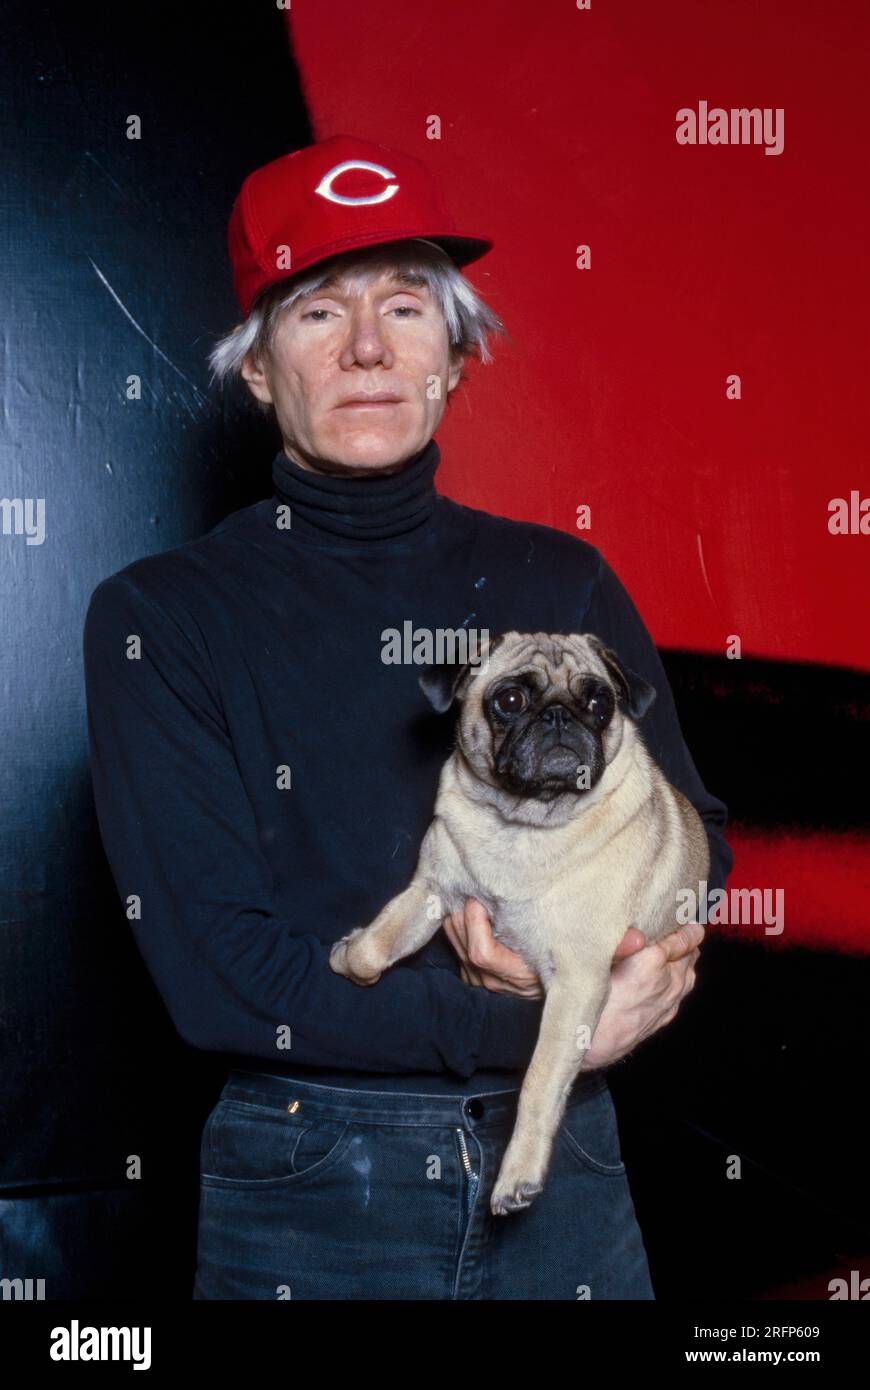 Andy Warhol pose en portant une casquette de baseball Cincinnati Reds tout en tenant un chien de race chiot en 1982. Warhol était un artiste visuel américain, réalisateur, producteur et figure de proue du mouvement pop art. Ses œuvres explorent la relation entre l'expression artistique, la publicité et la culture des célébrités qui a prospéré dans les années 1960, et couvrent une variété de médias, y compris la peinture, la sérigraphie, la photographie, le cinéma, et sculpture. Parmi ses œuvres les plus connues figurent les peintures sérigraphiées Campbell's Soup Cans et Marilyn diptyque. Photo de Bernard Gotfryd Banque D'Images